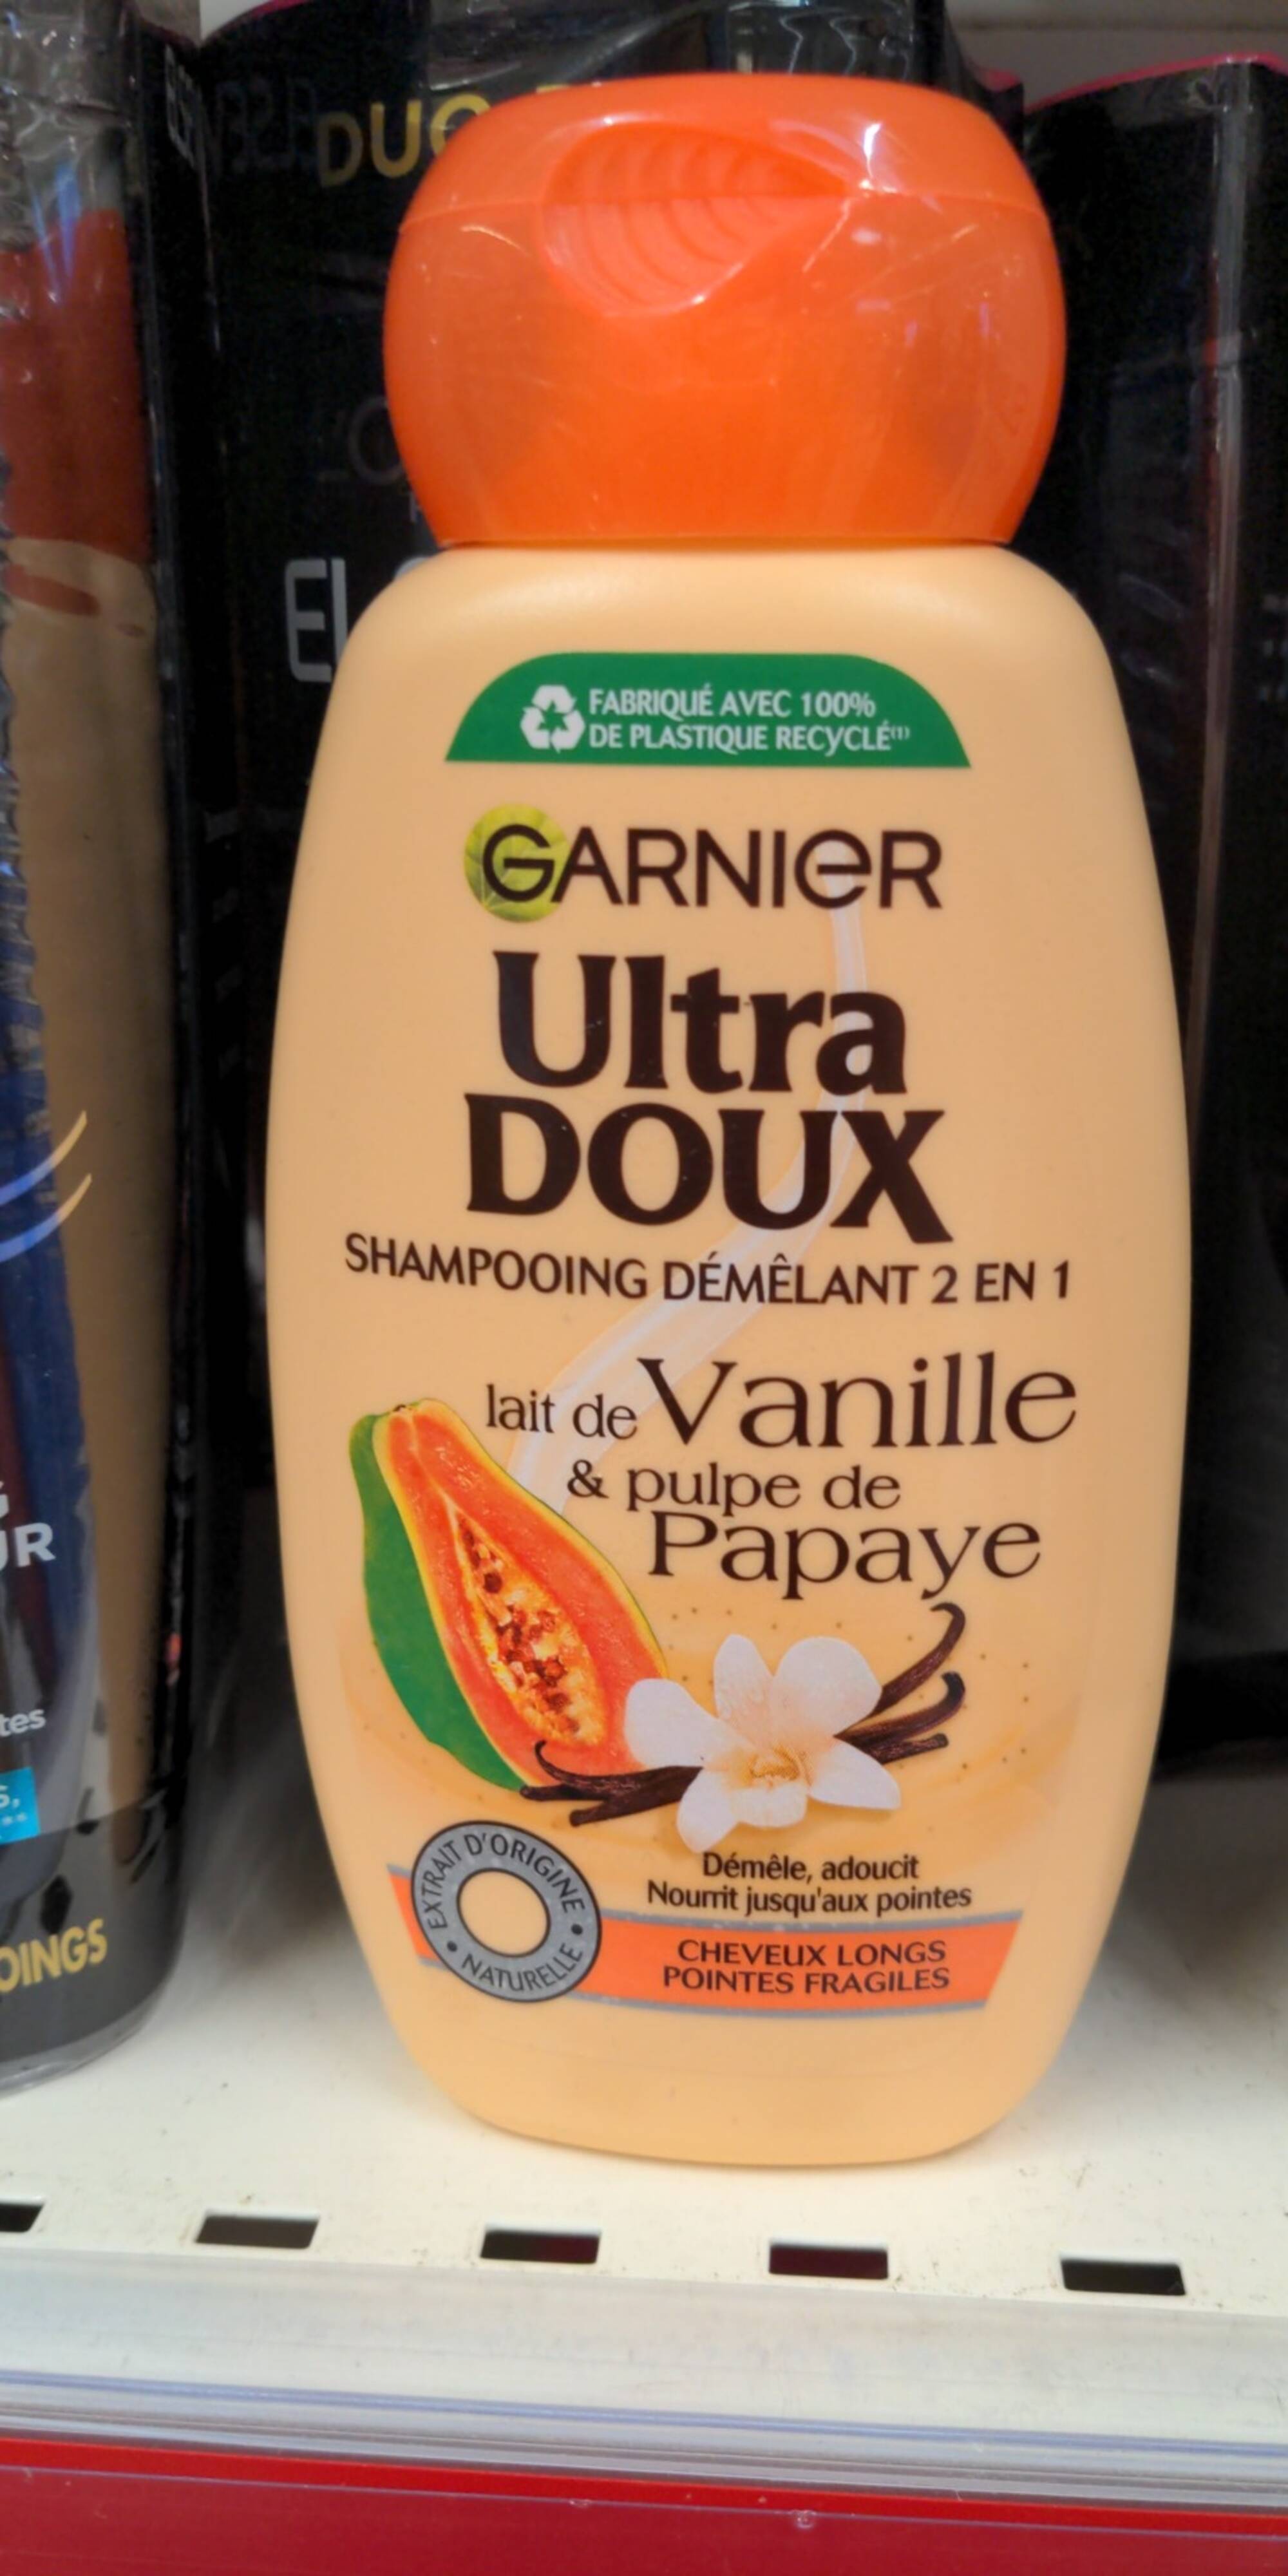 GARNIER - Ultra doux - Shampooing démêlant 2 en 1 lait de vanille & pulpe papaye 